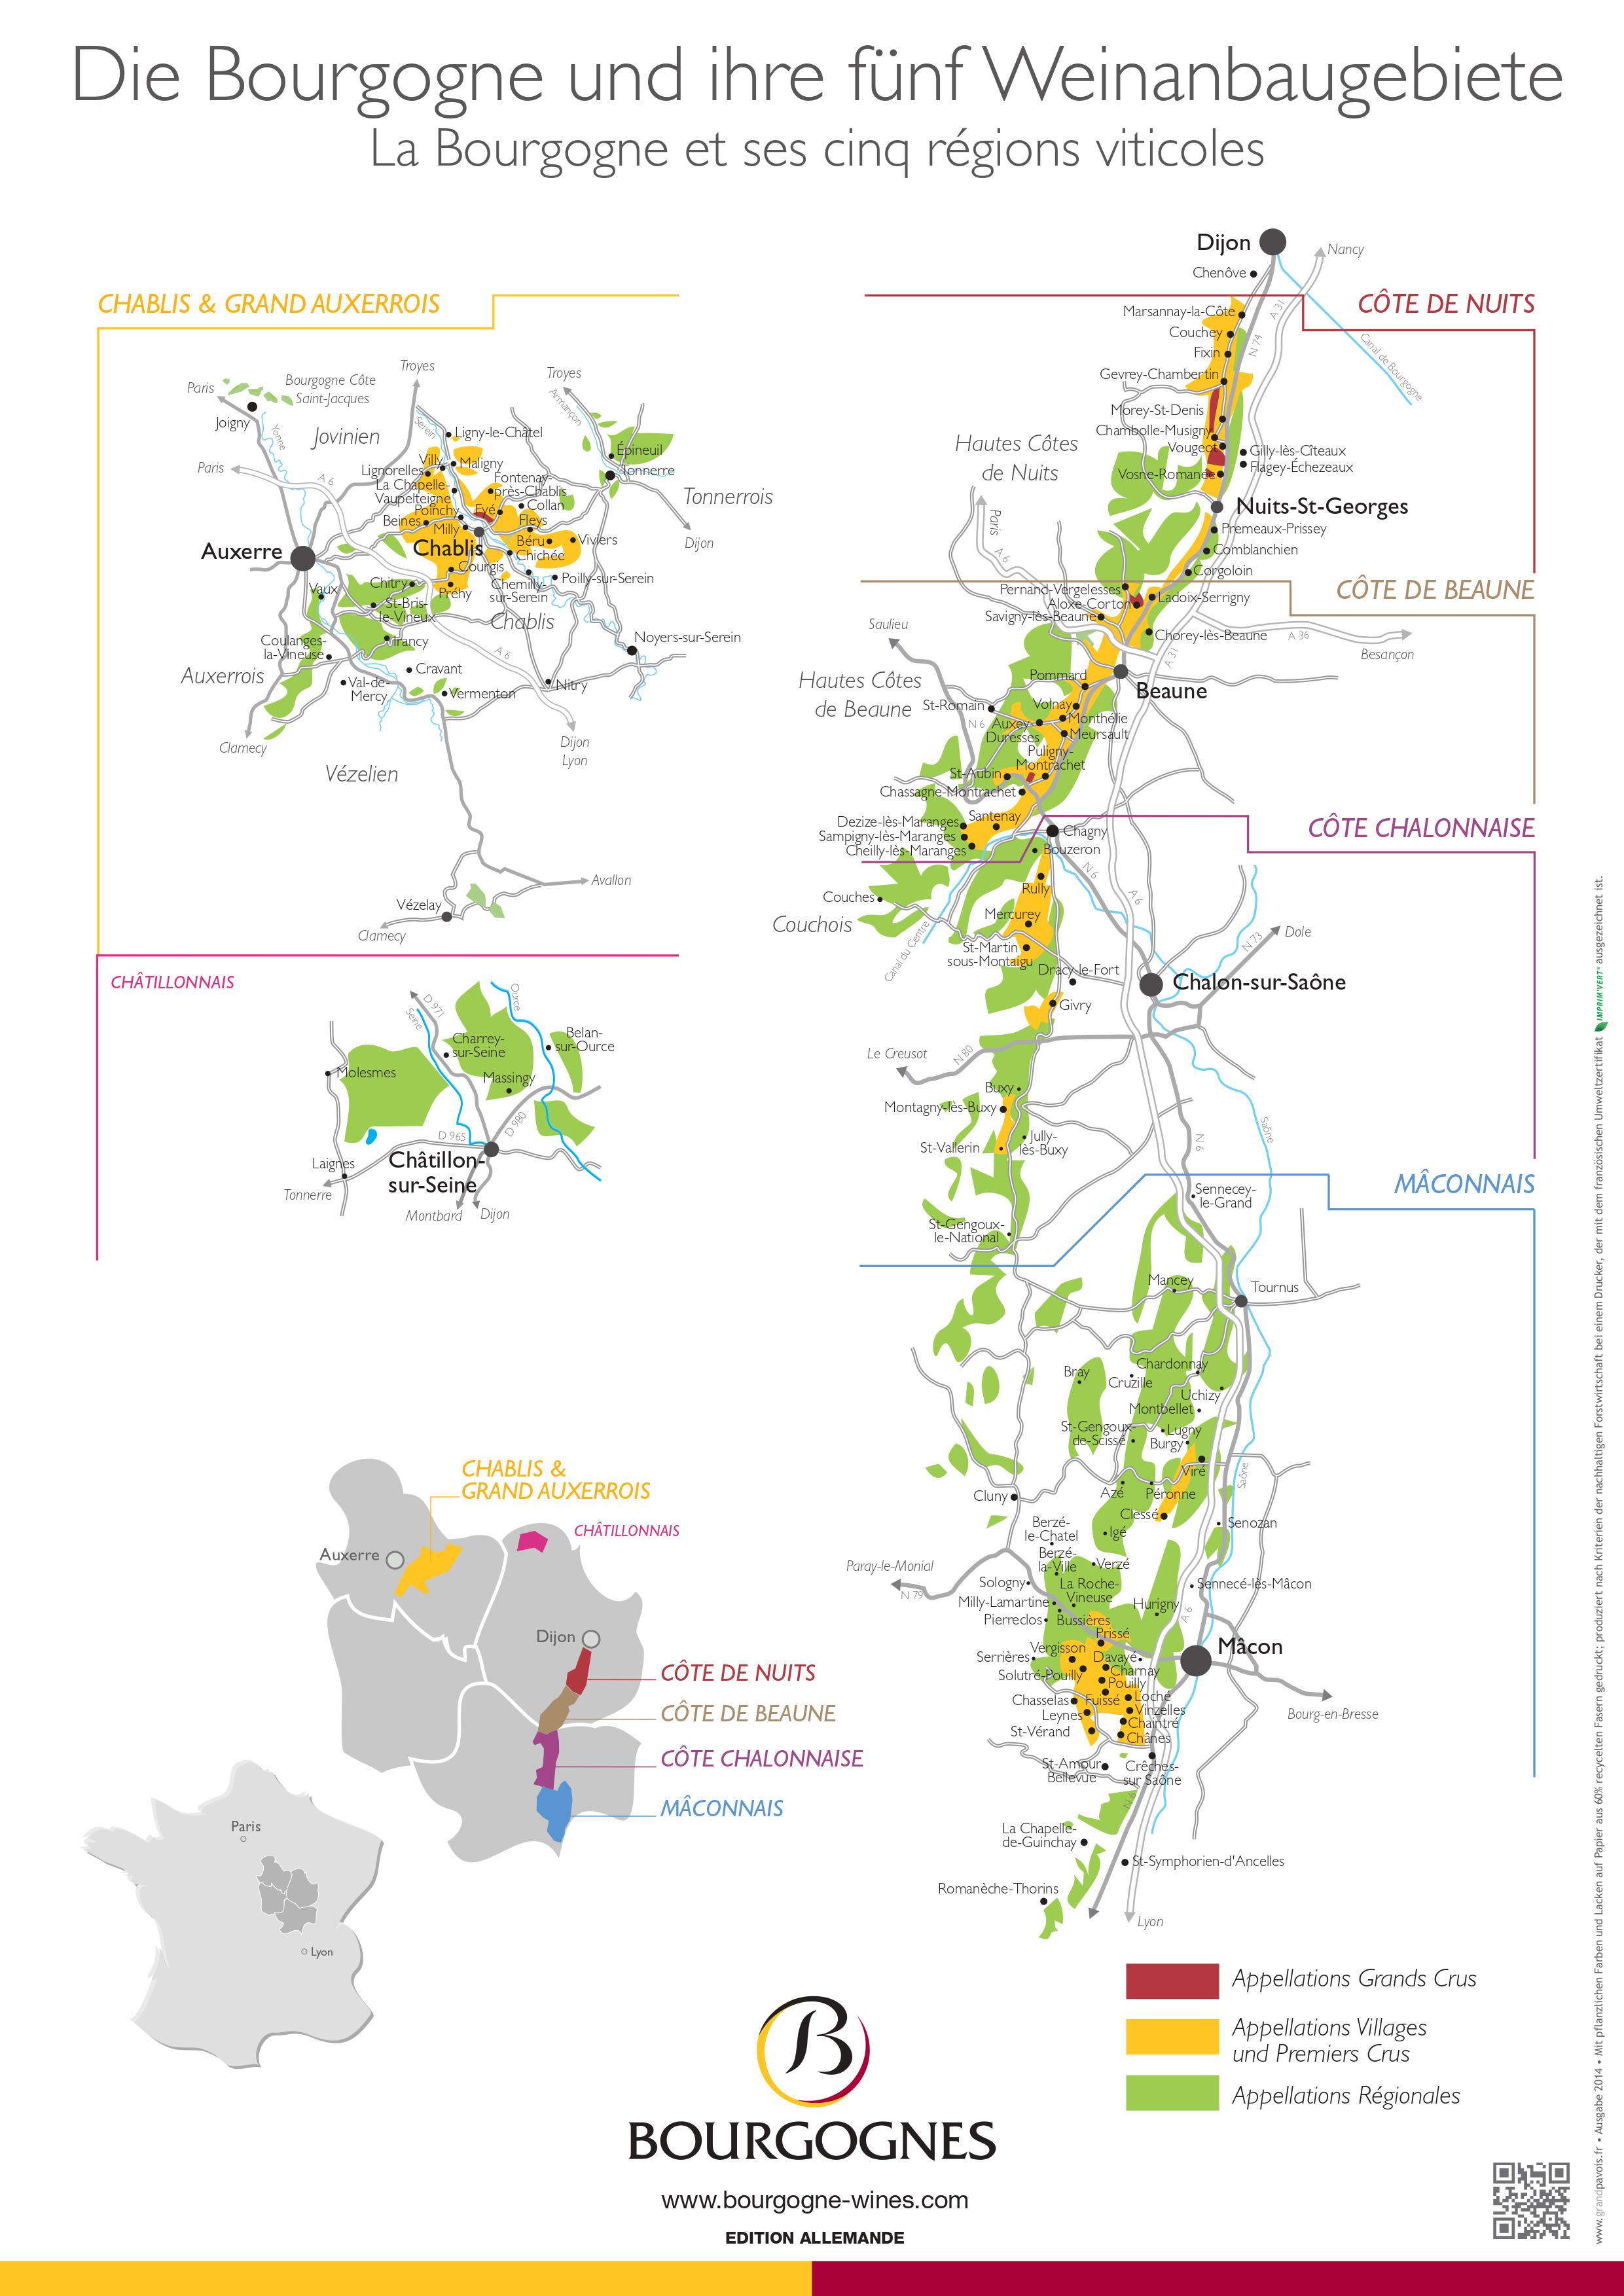 Die Bourgogne und ihre fünf Regionen